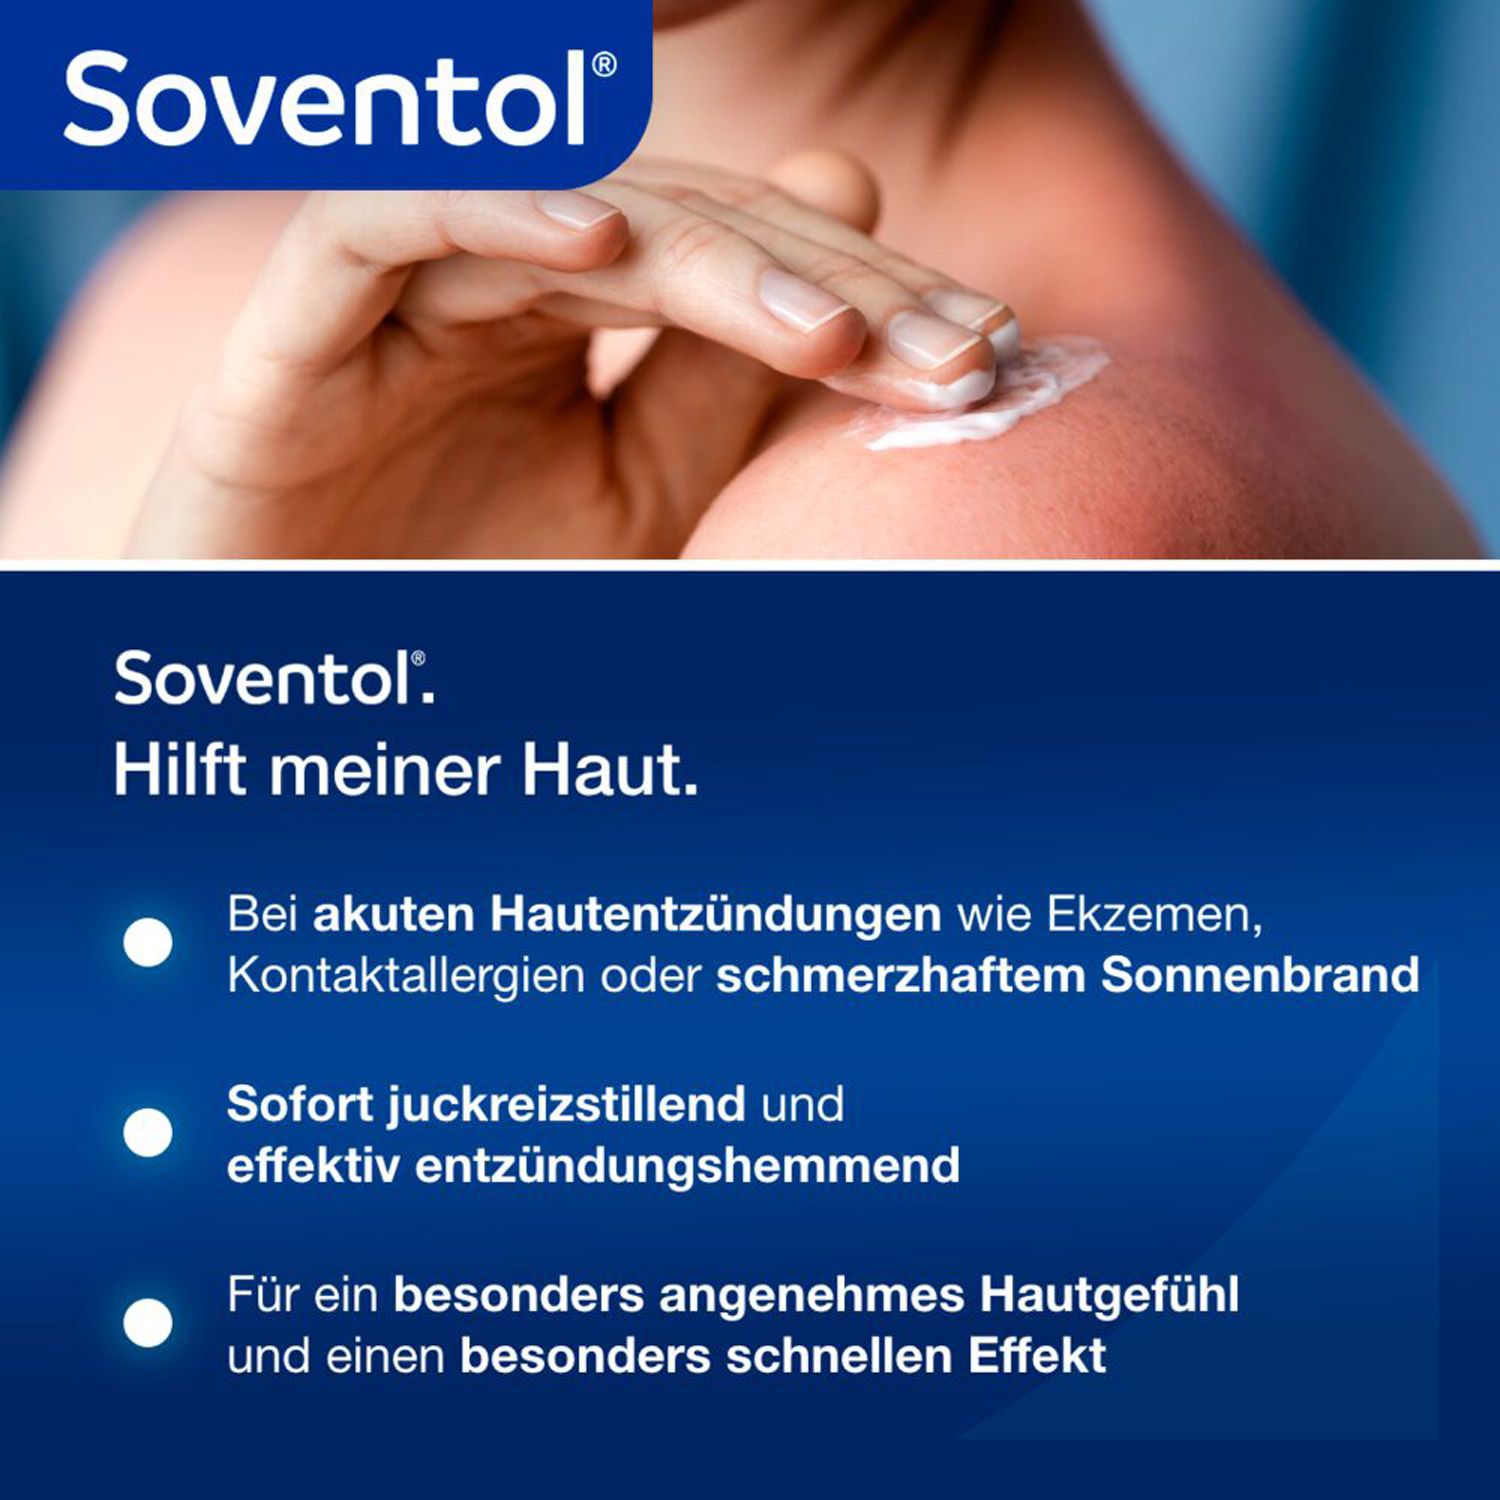 Soventol HydroCortisonACETAT 0,5% Hautentzündungen - Jetzt 2€ mit dem Code soventol2 sparen*